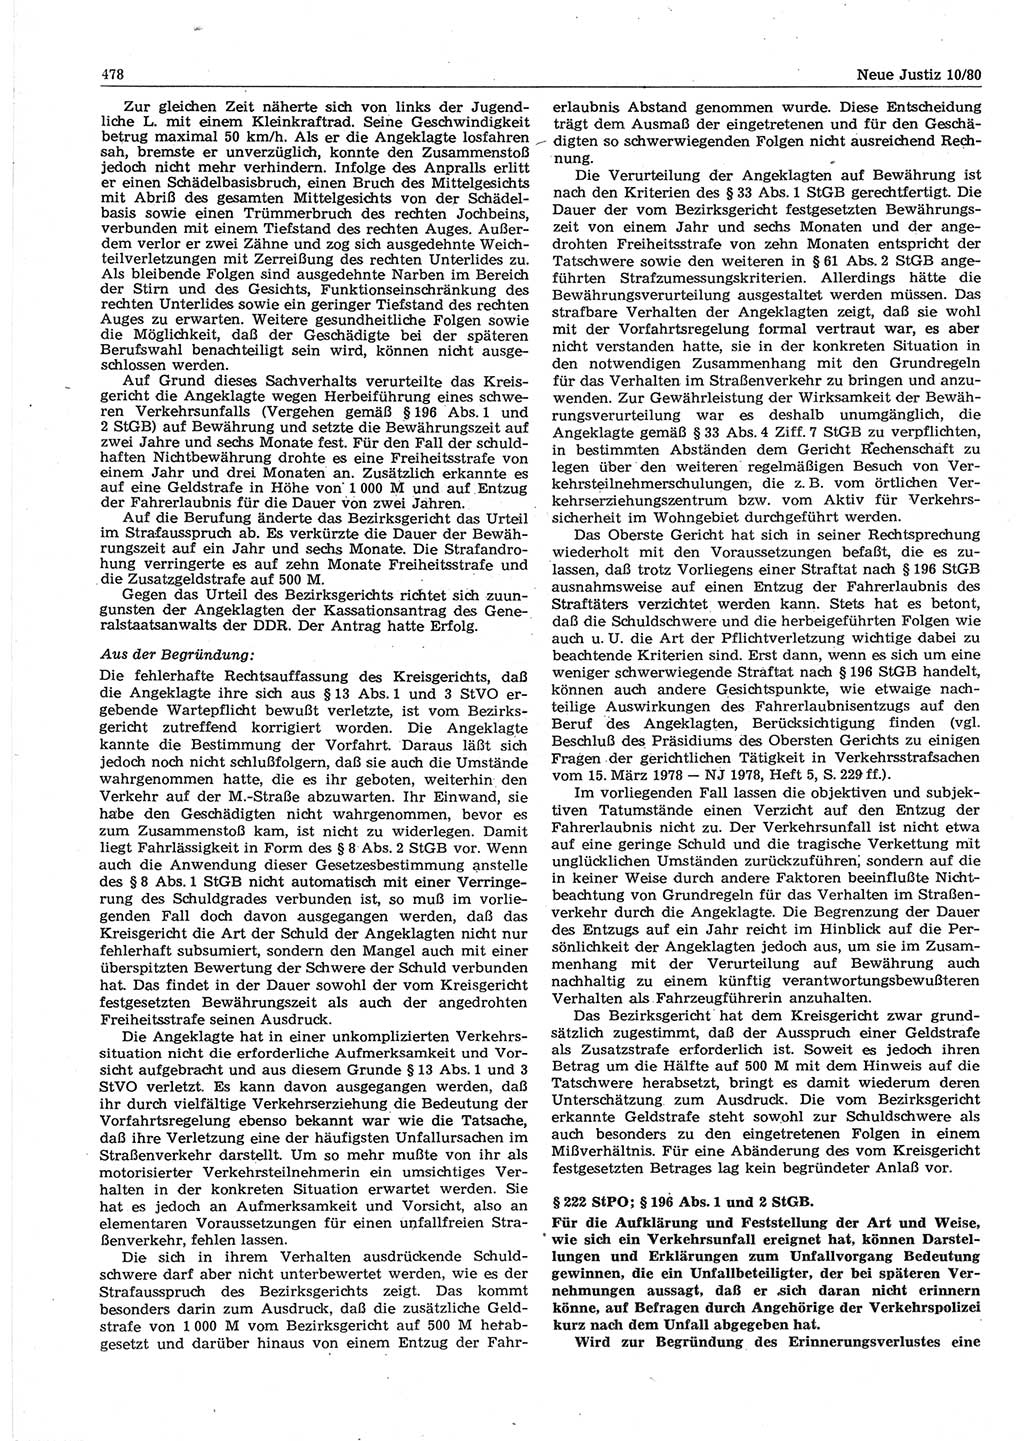 Neue Justiz (NJ), Zeitschrift für sozialistisches Recht und Gesetzlichkeit [Deutsche Demokratische Republik (DDR)], 34. Jahrgang 1980, Seite 478 (NJ DDR 1980, S. 478)